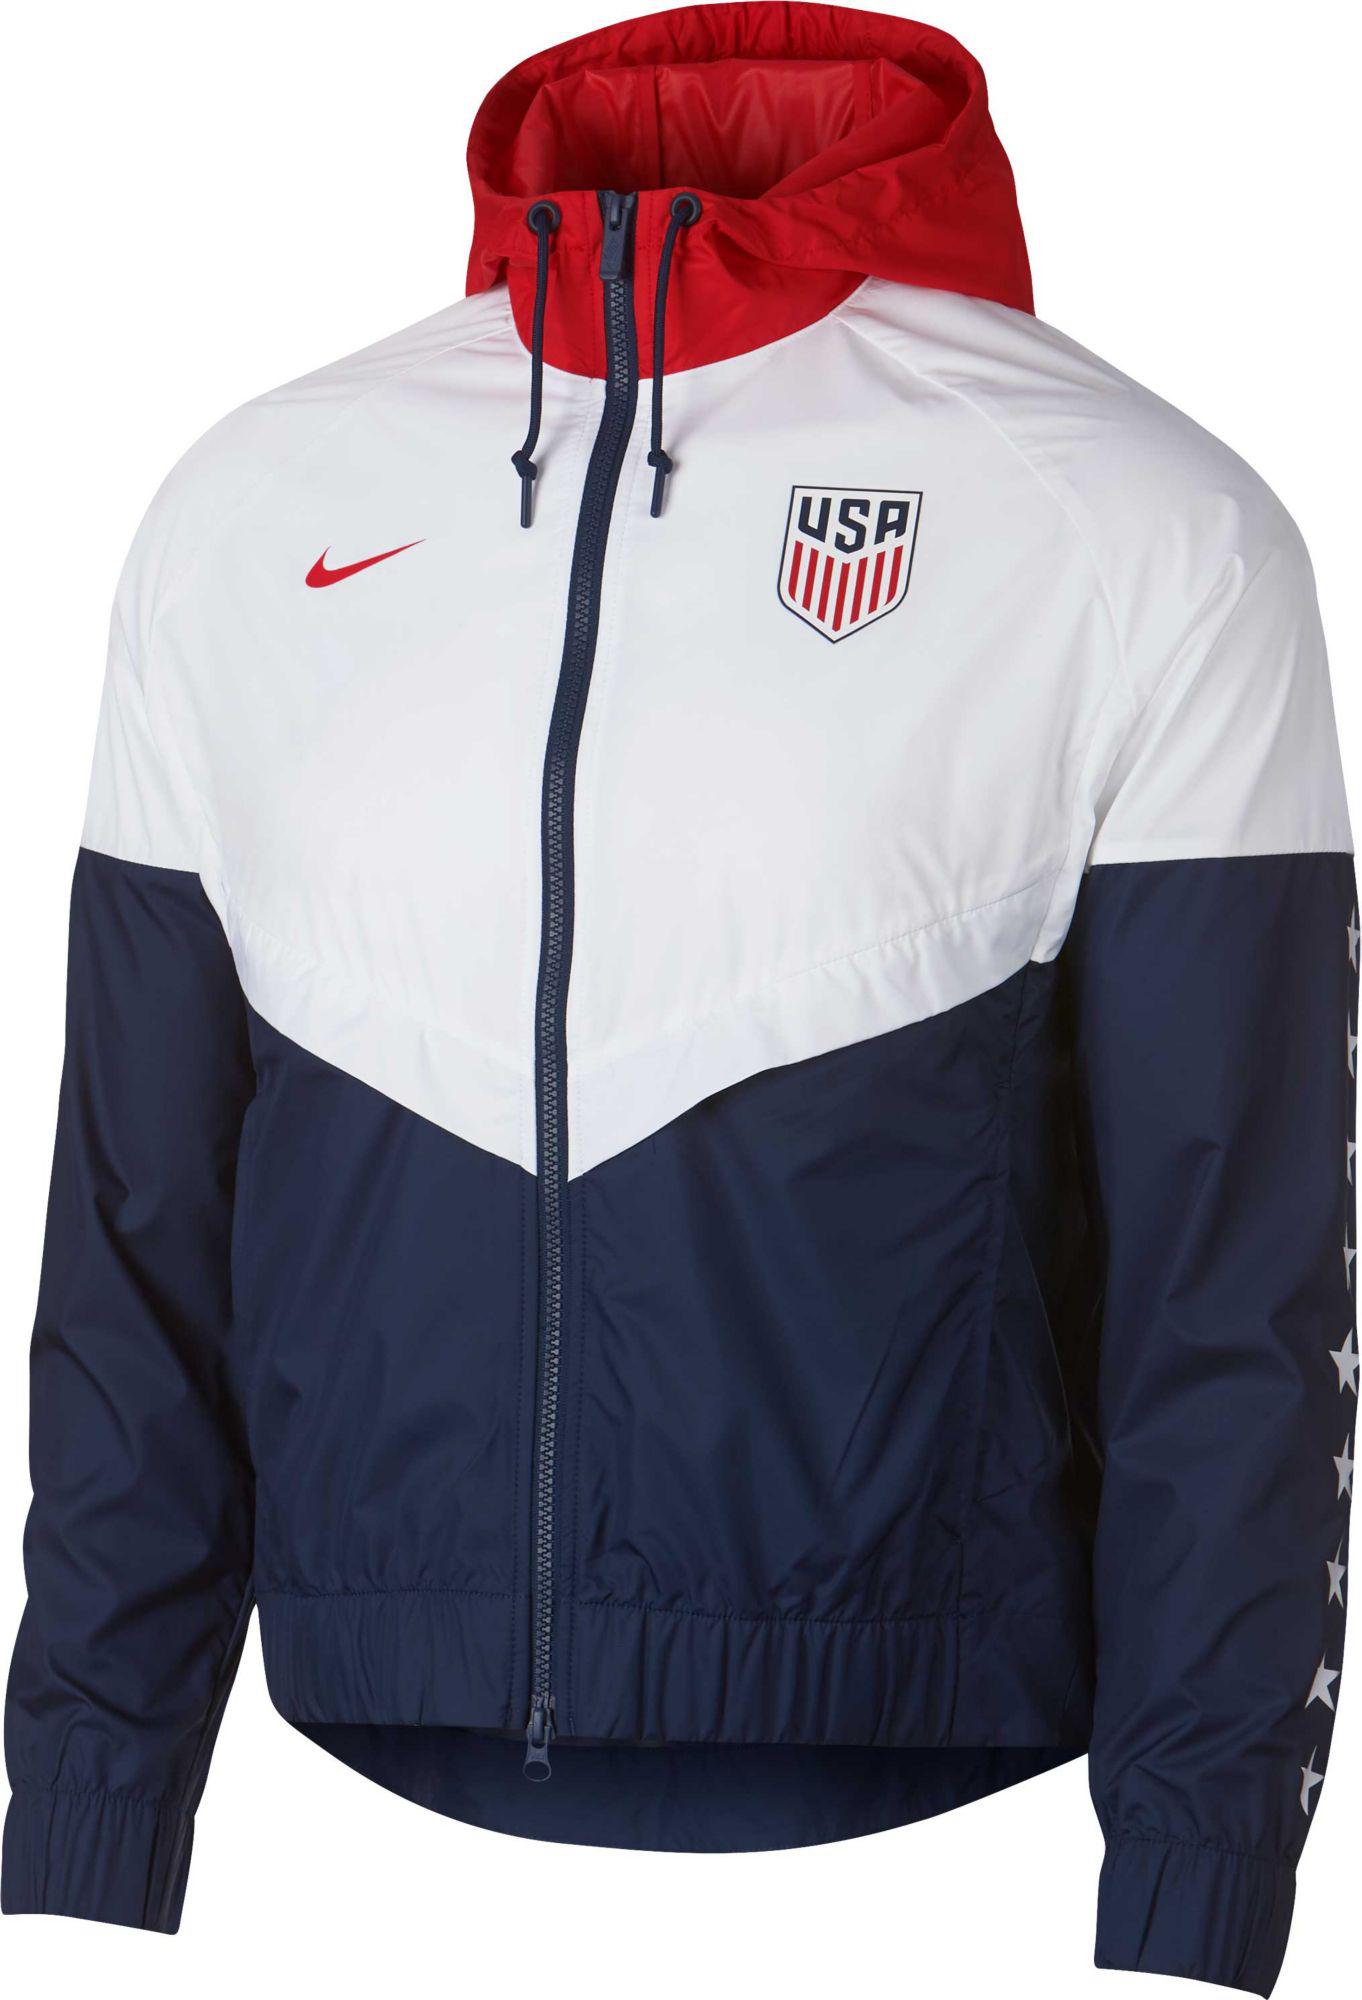 olympic nike jacket